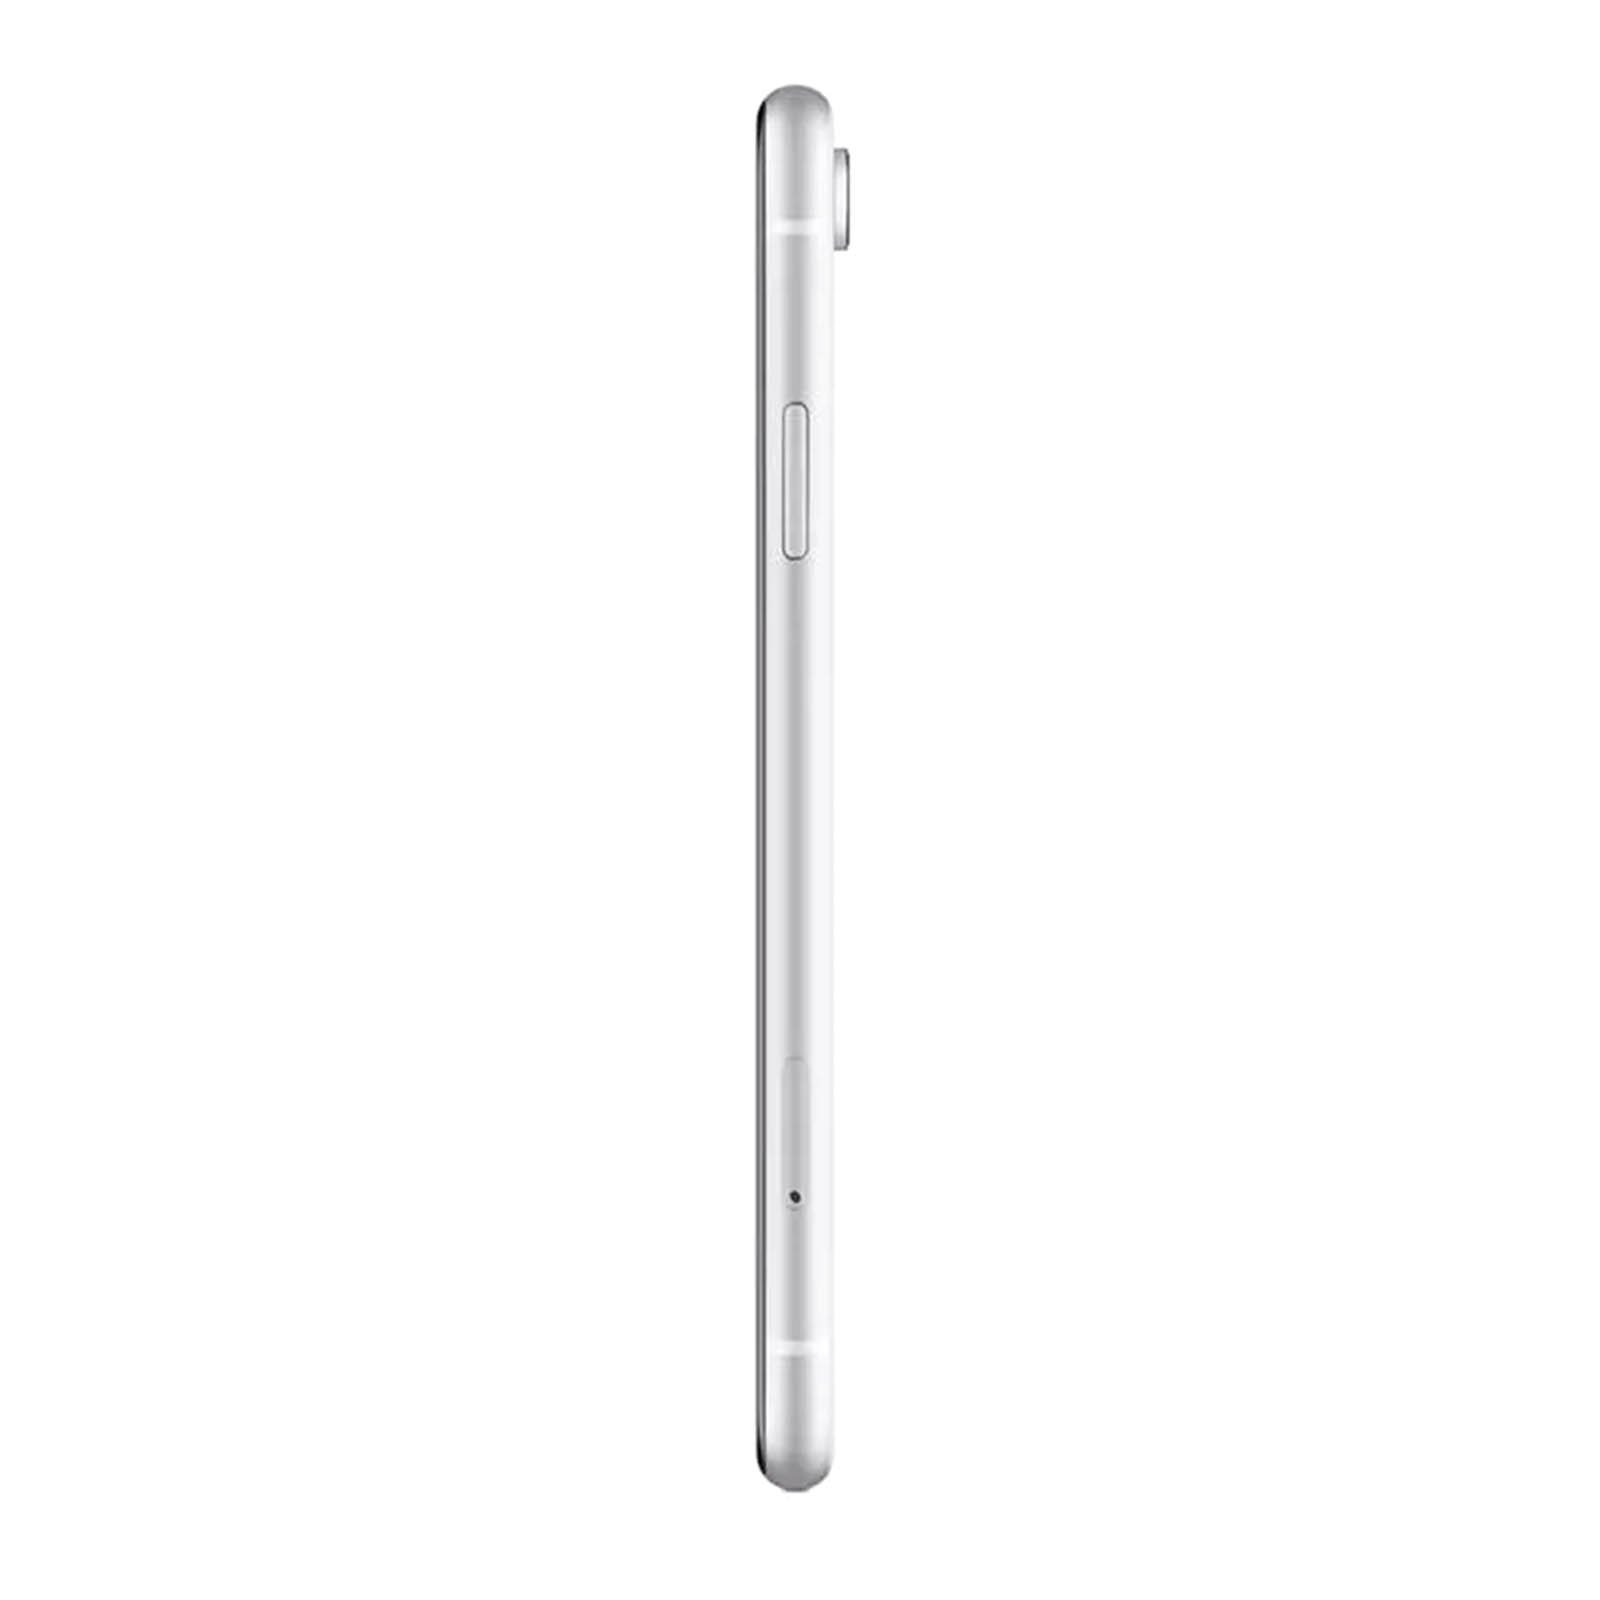 Apple iPhone XR 64 GB - White - Unlocked - Refurbished – Loop 